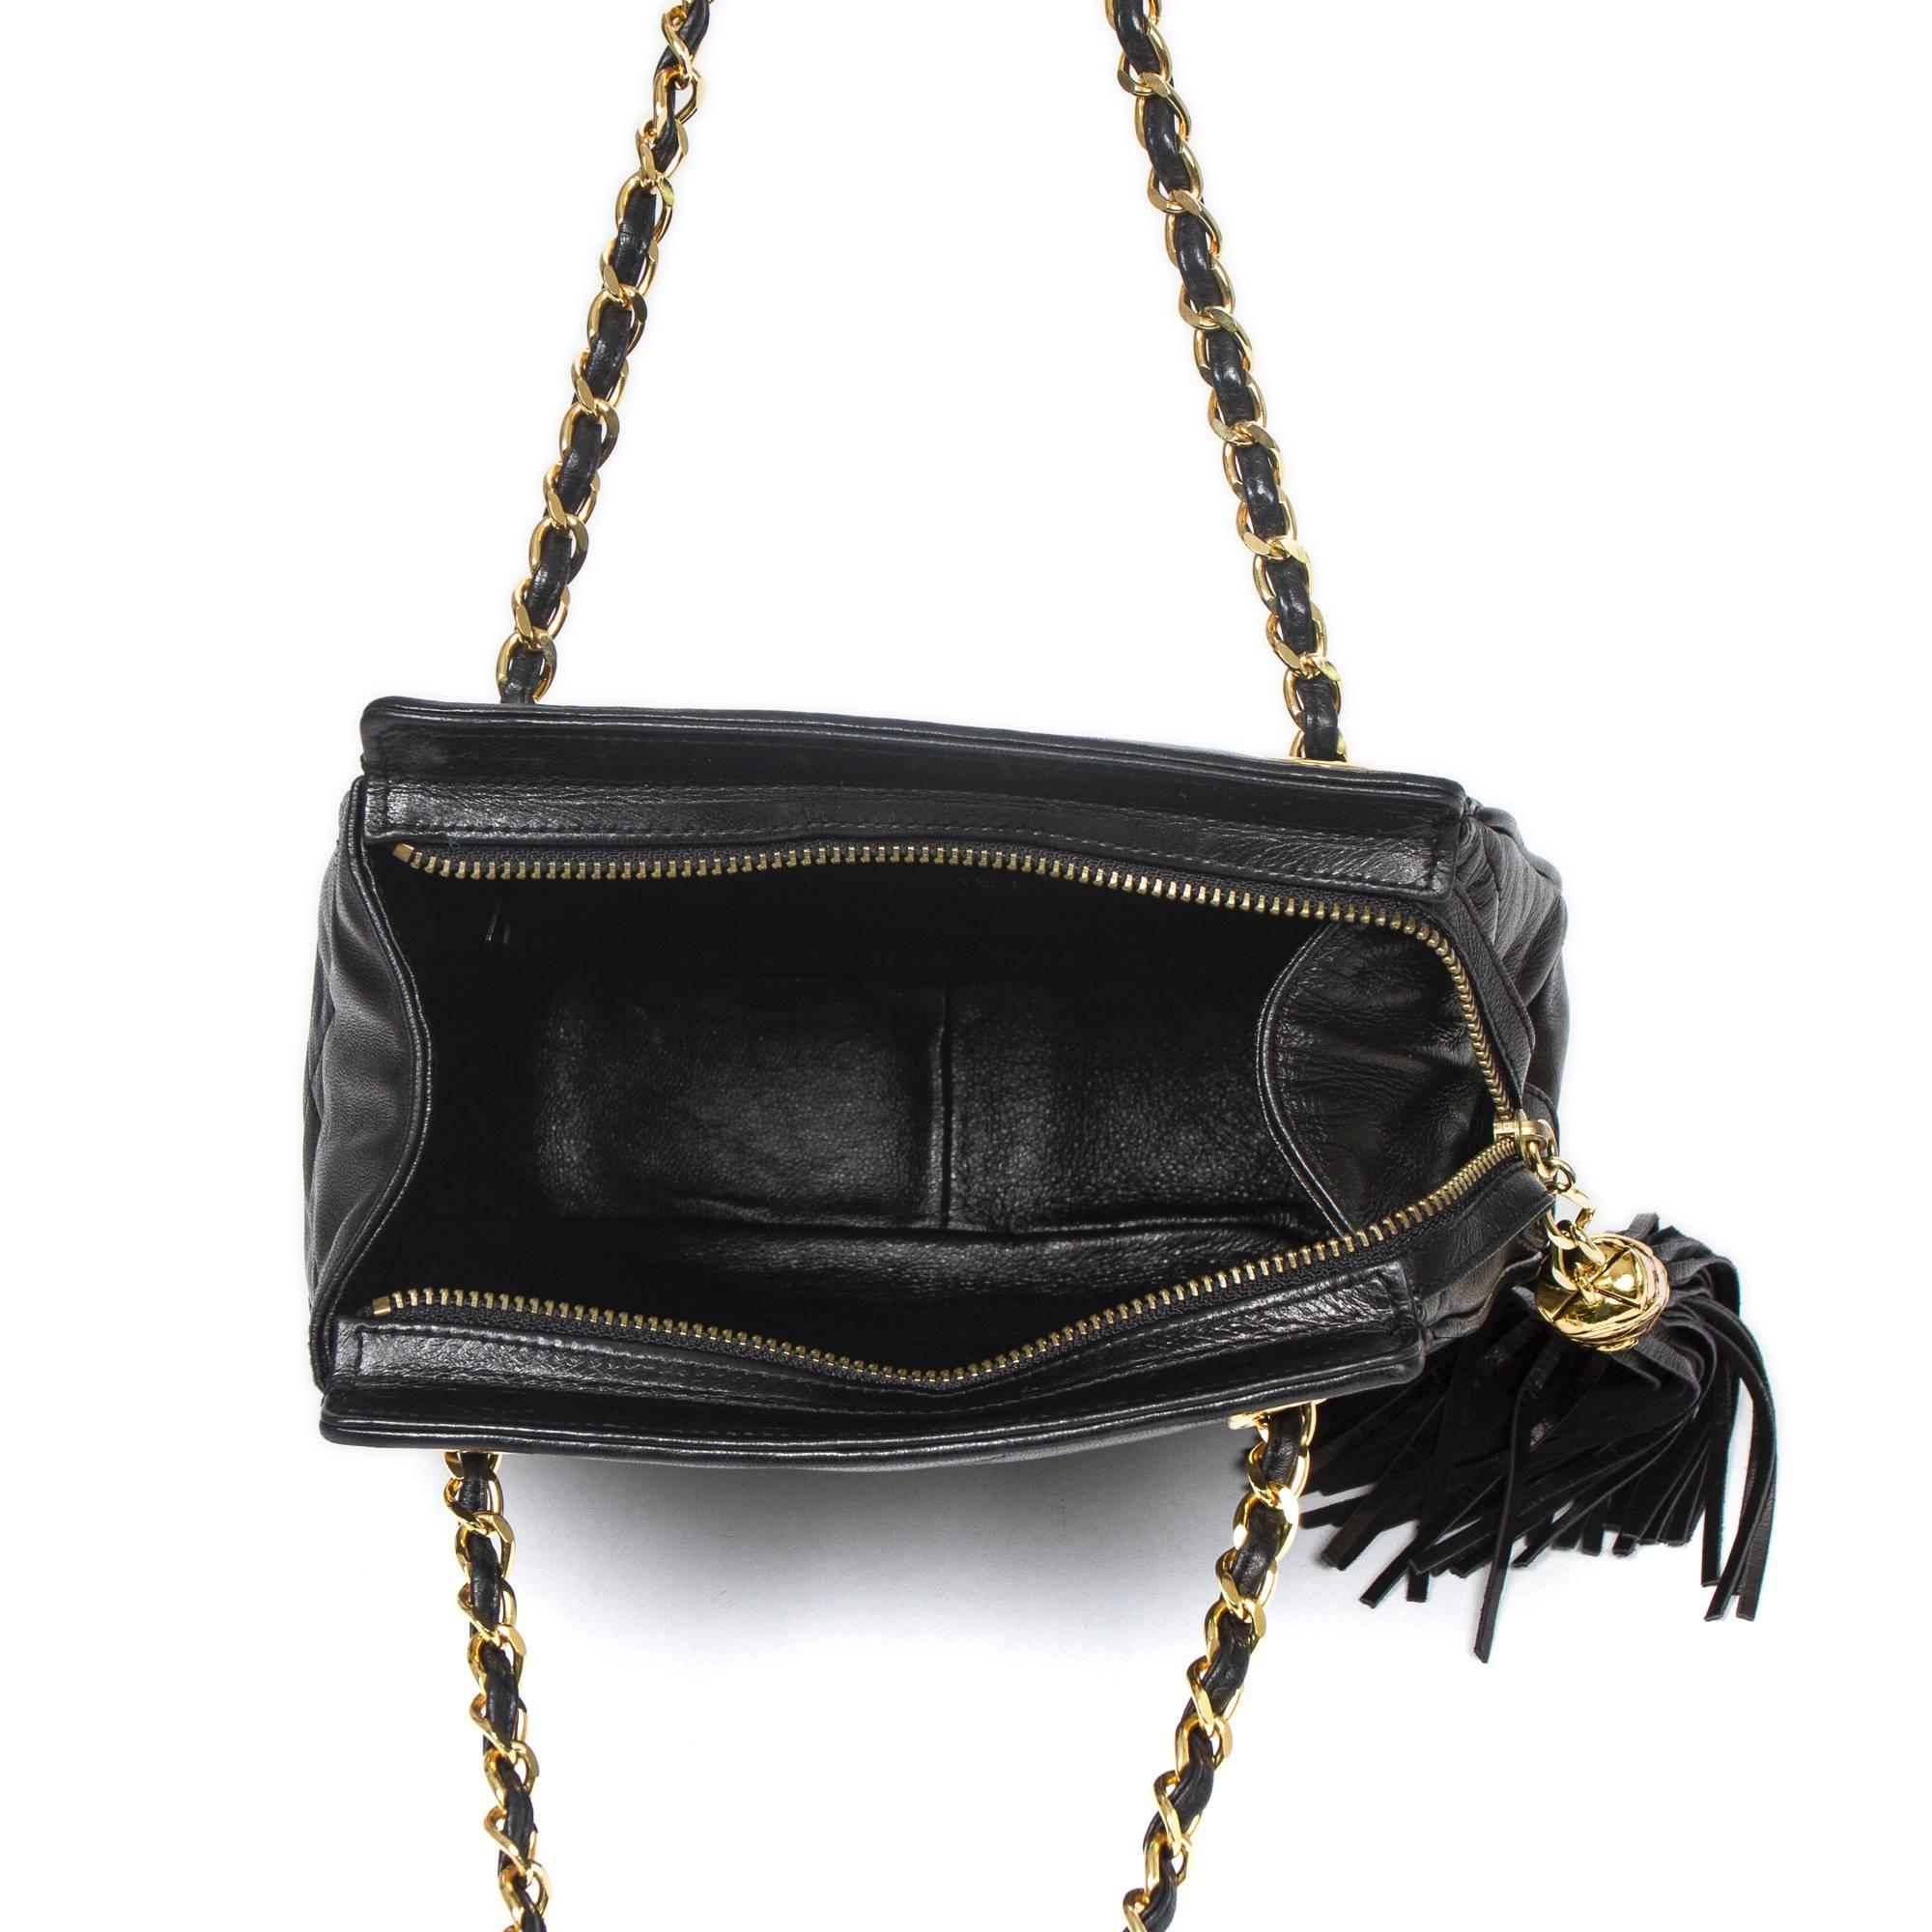 Chanel Fringe Shoulder Bag 21cm Black Large Quilted Leather 2